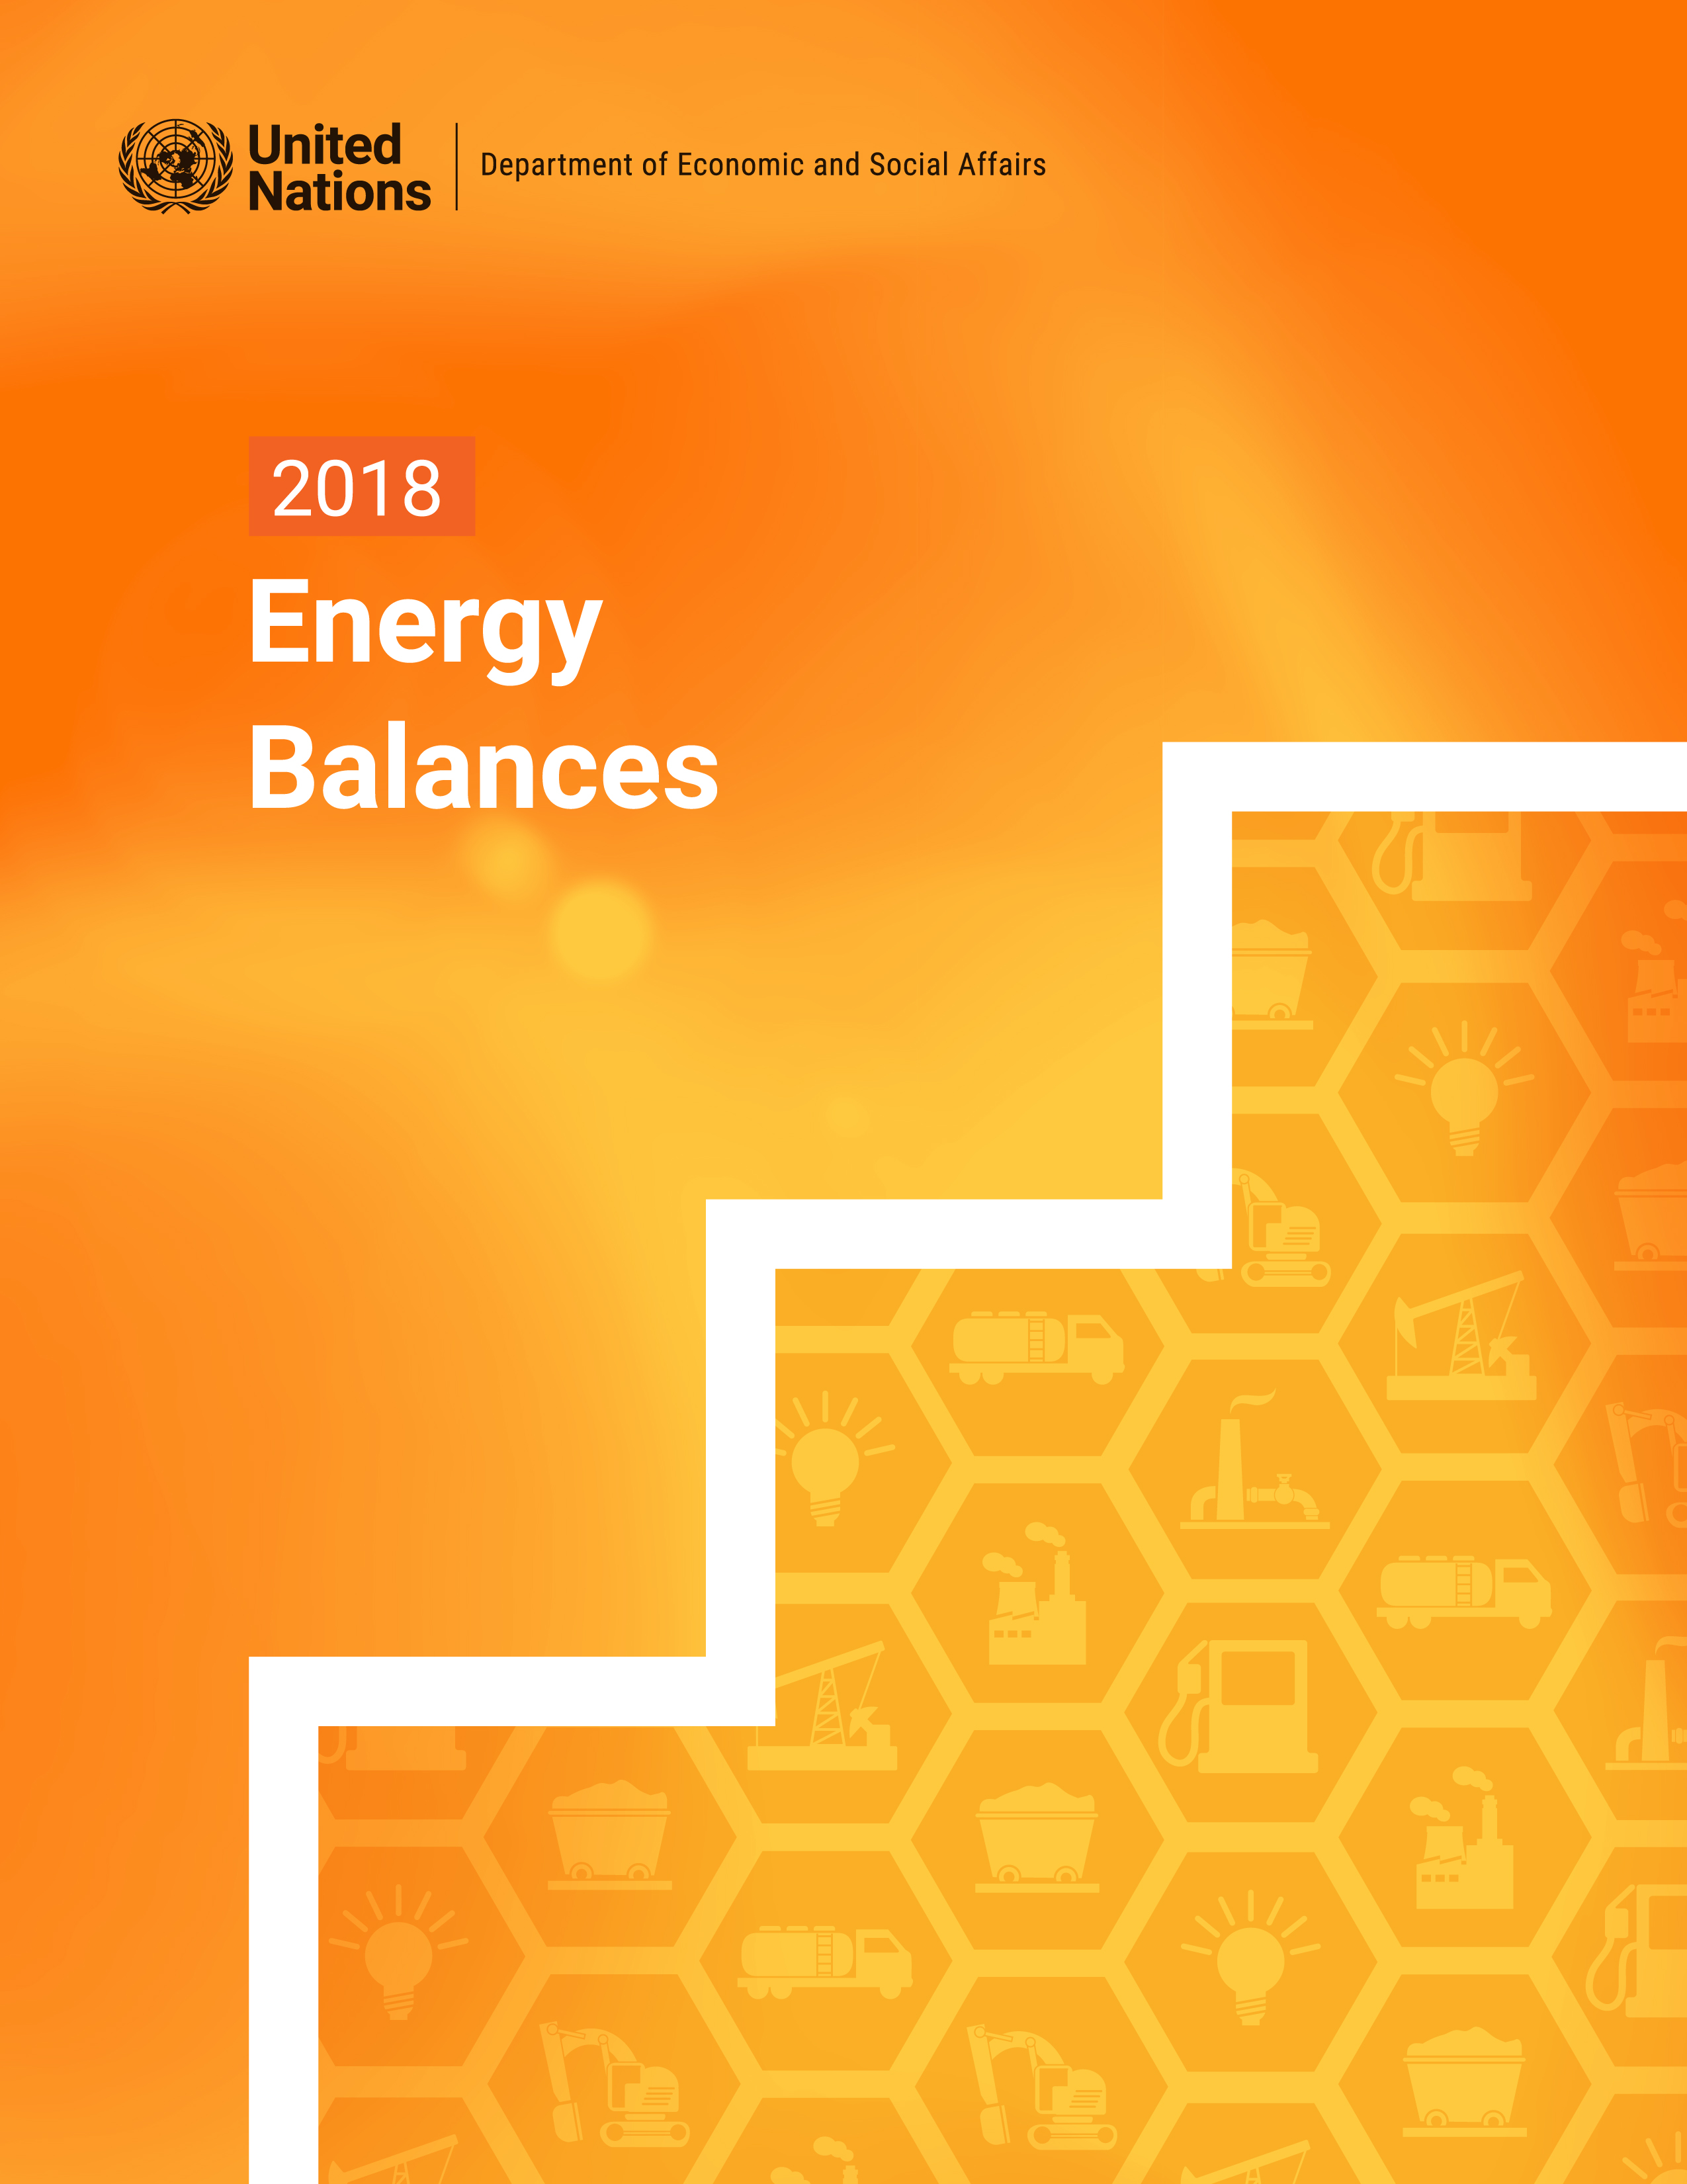 image of 2018 Energy Balances